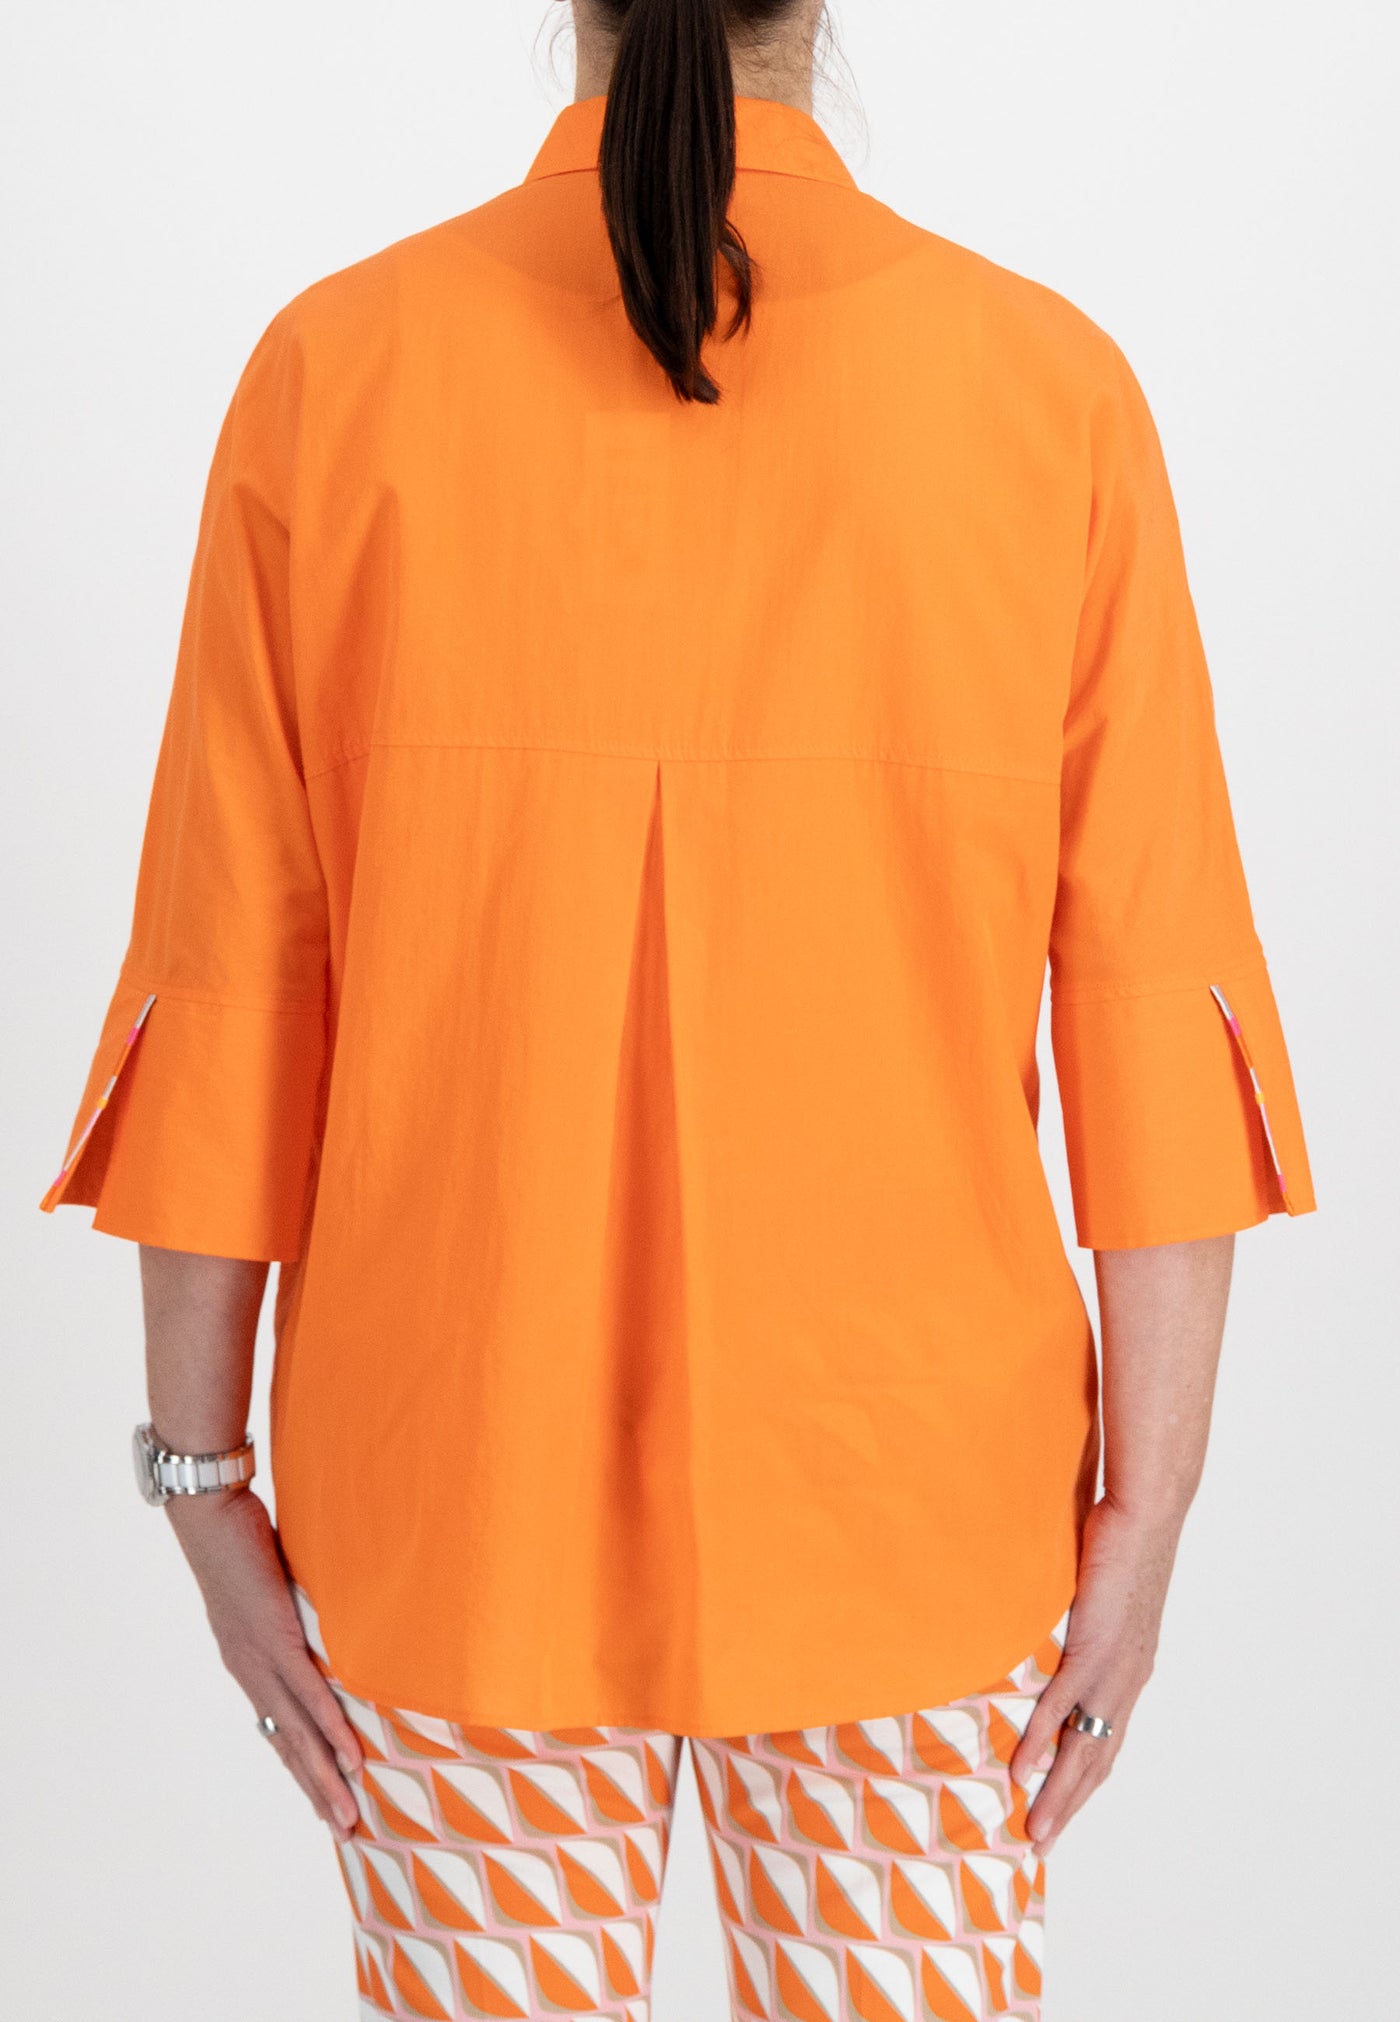 Plain Orange Button Up Shirt